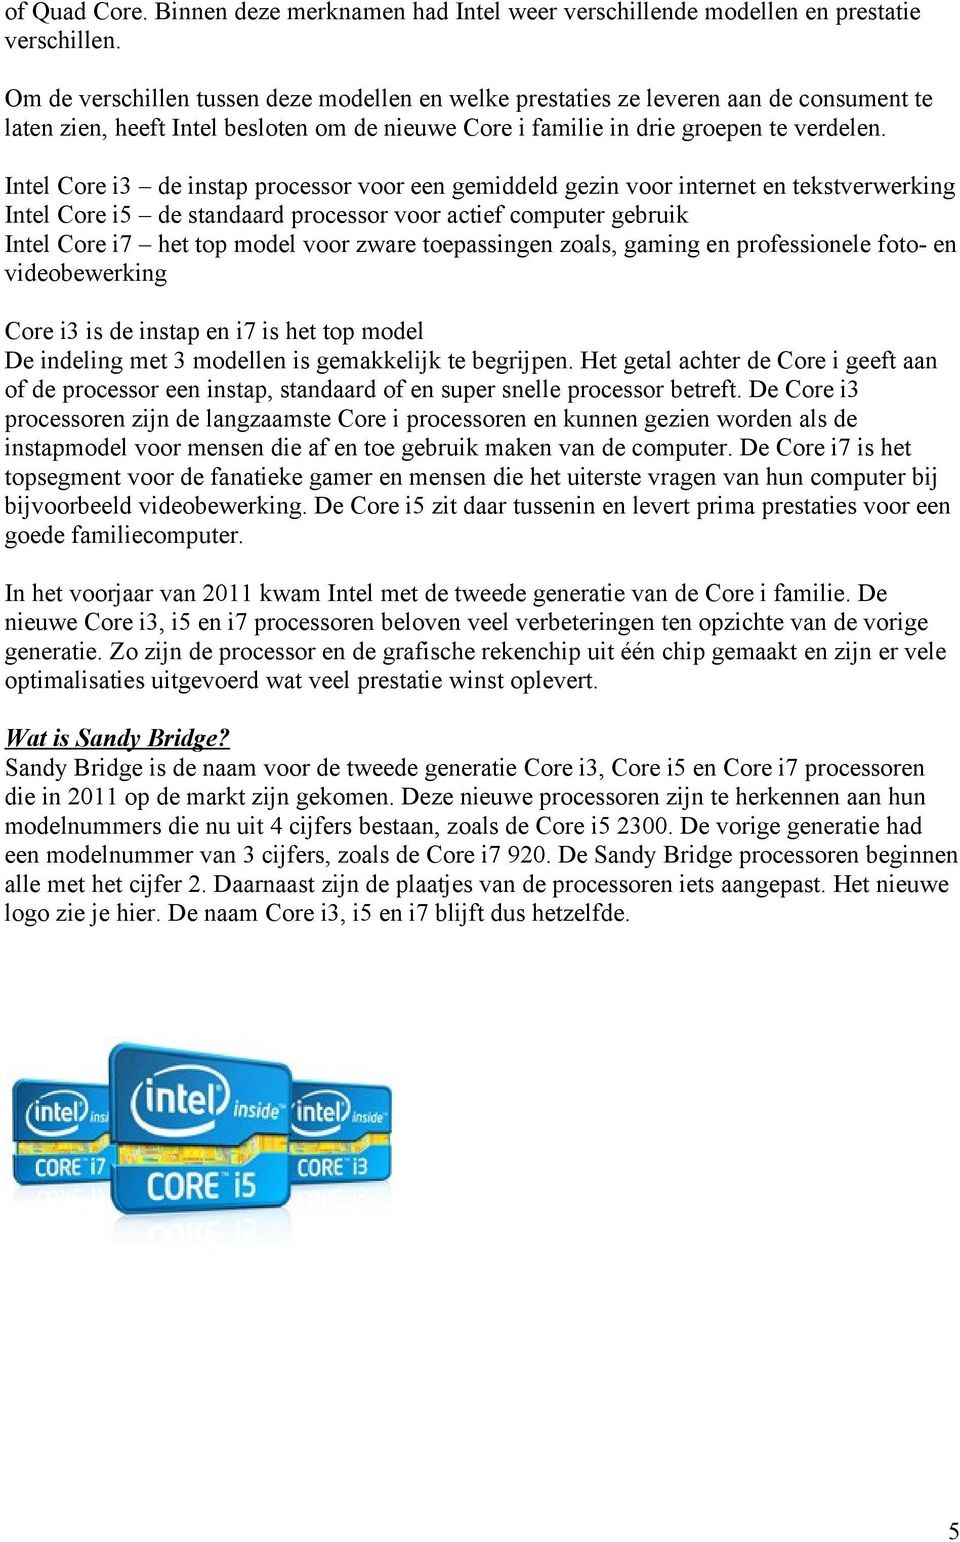 Intel Core i3 de instap processor voor een gemiddeld gezin voor internet en tekstverwerking Intel Core i5 de standaard processor voor actief computer gebruik Intel Core i7 het top model voor zware